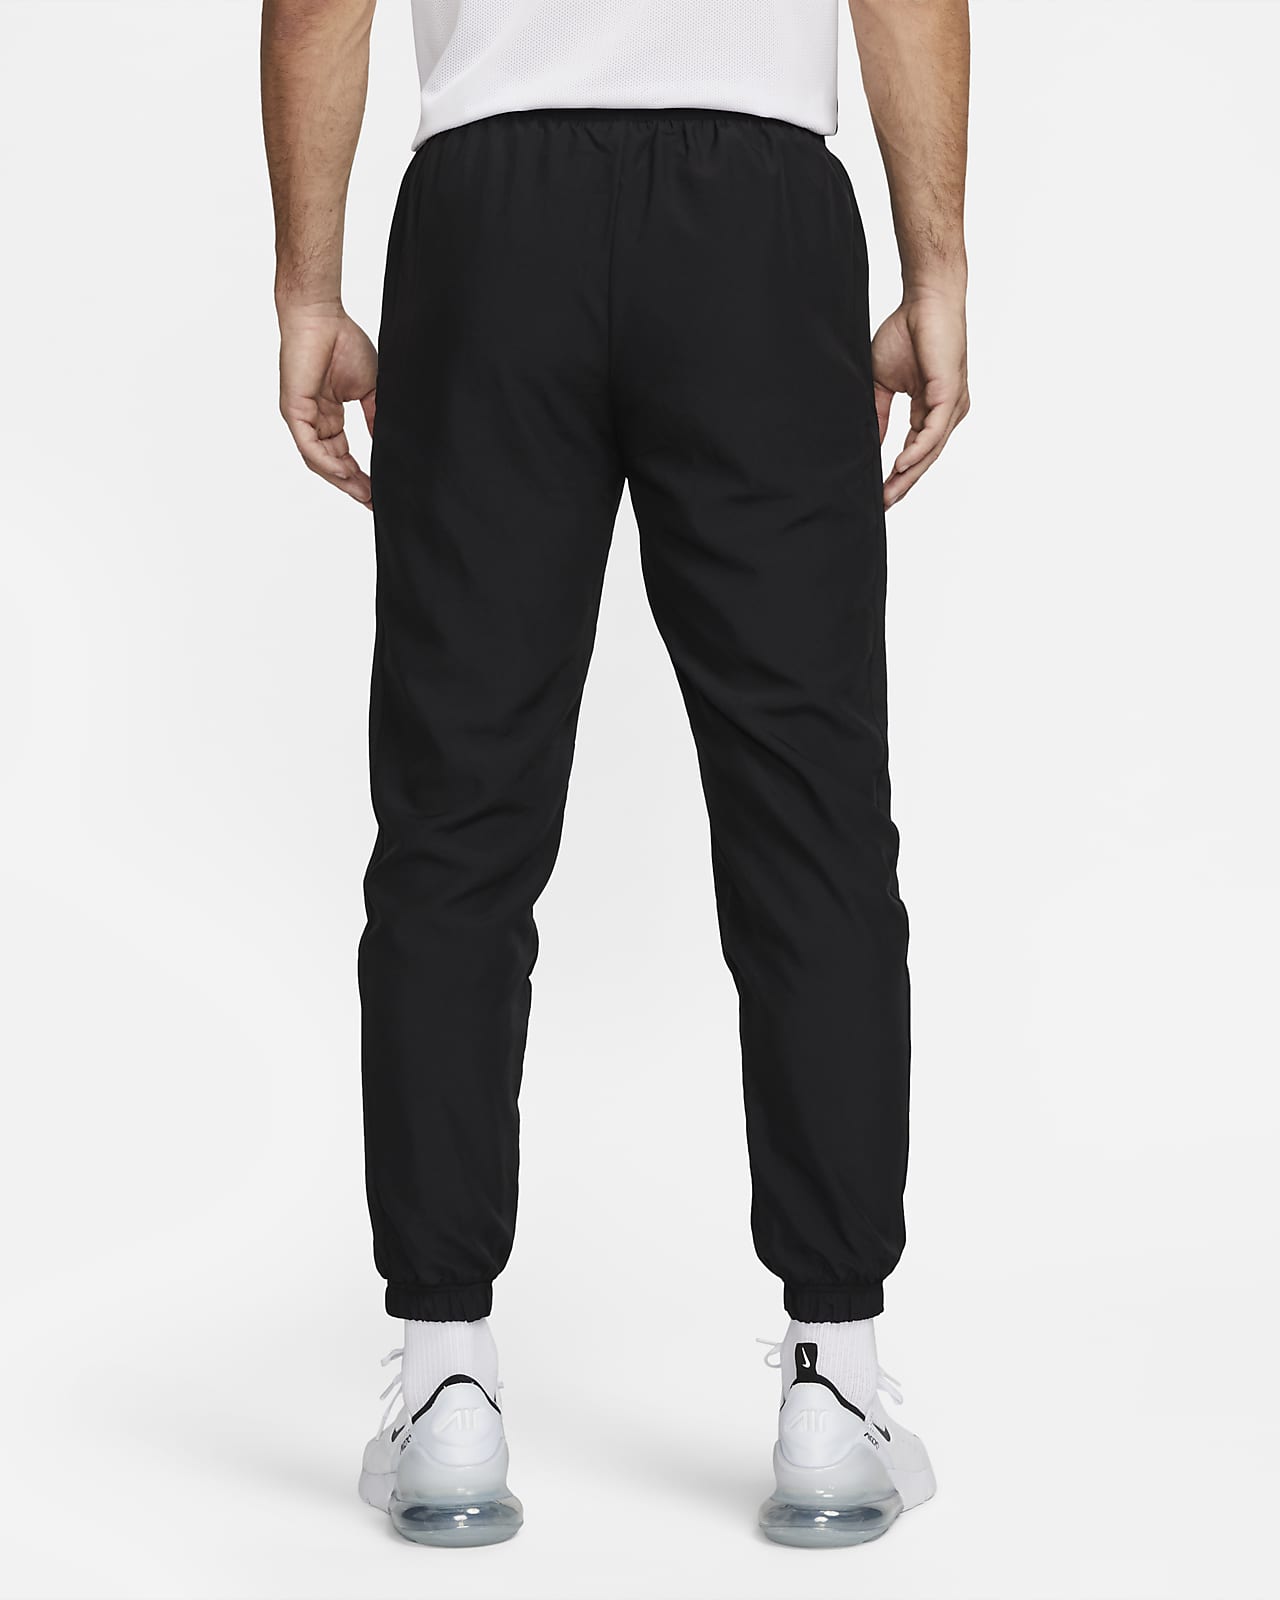 Pants de fútbol para hombre Nike Nike.com